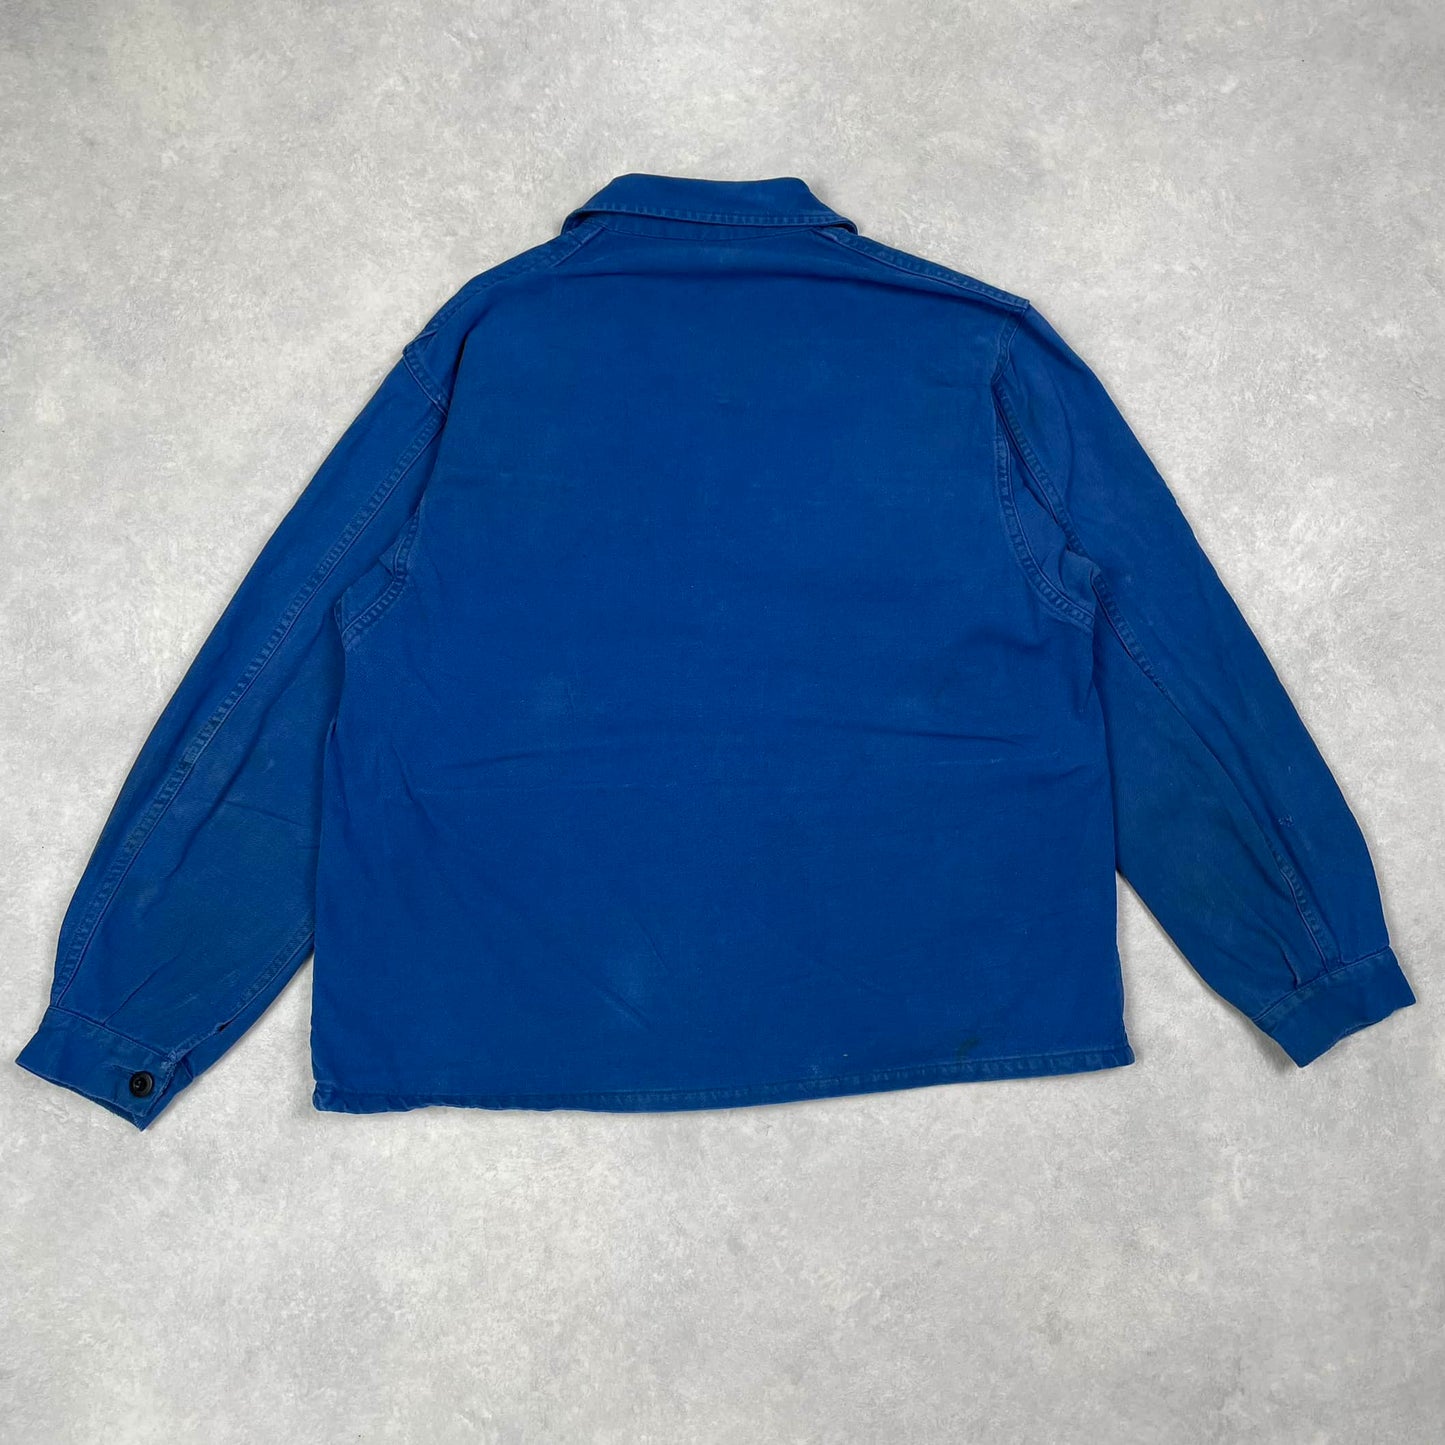 Vintage Bleu de Travail Jacket #2